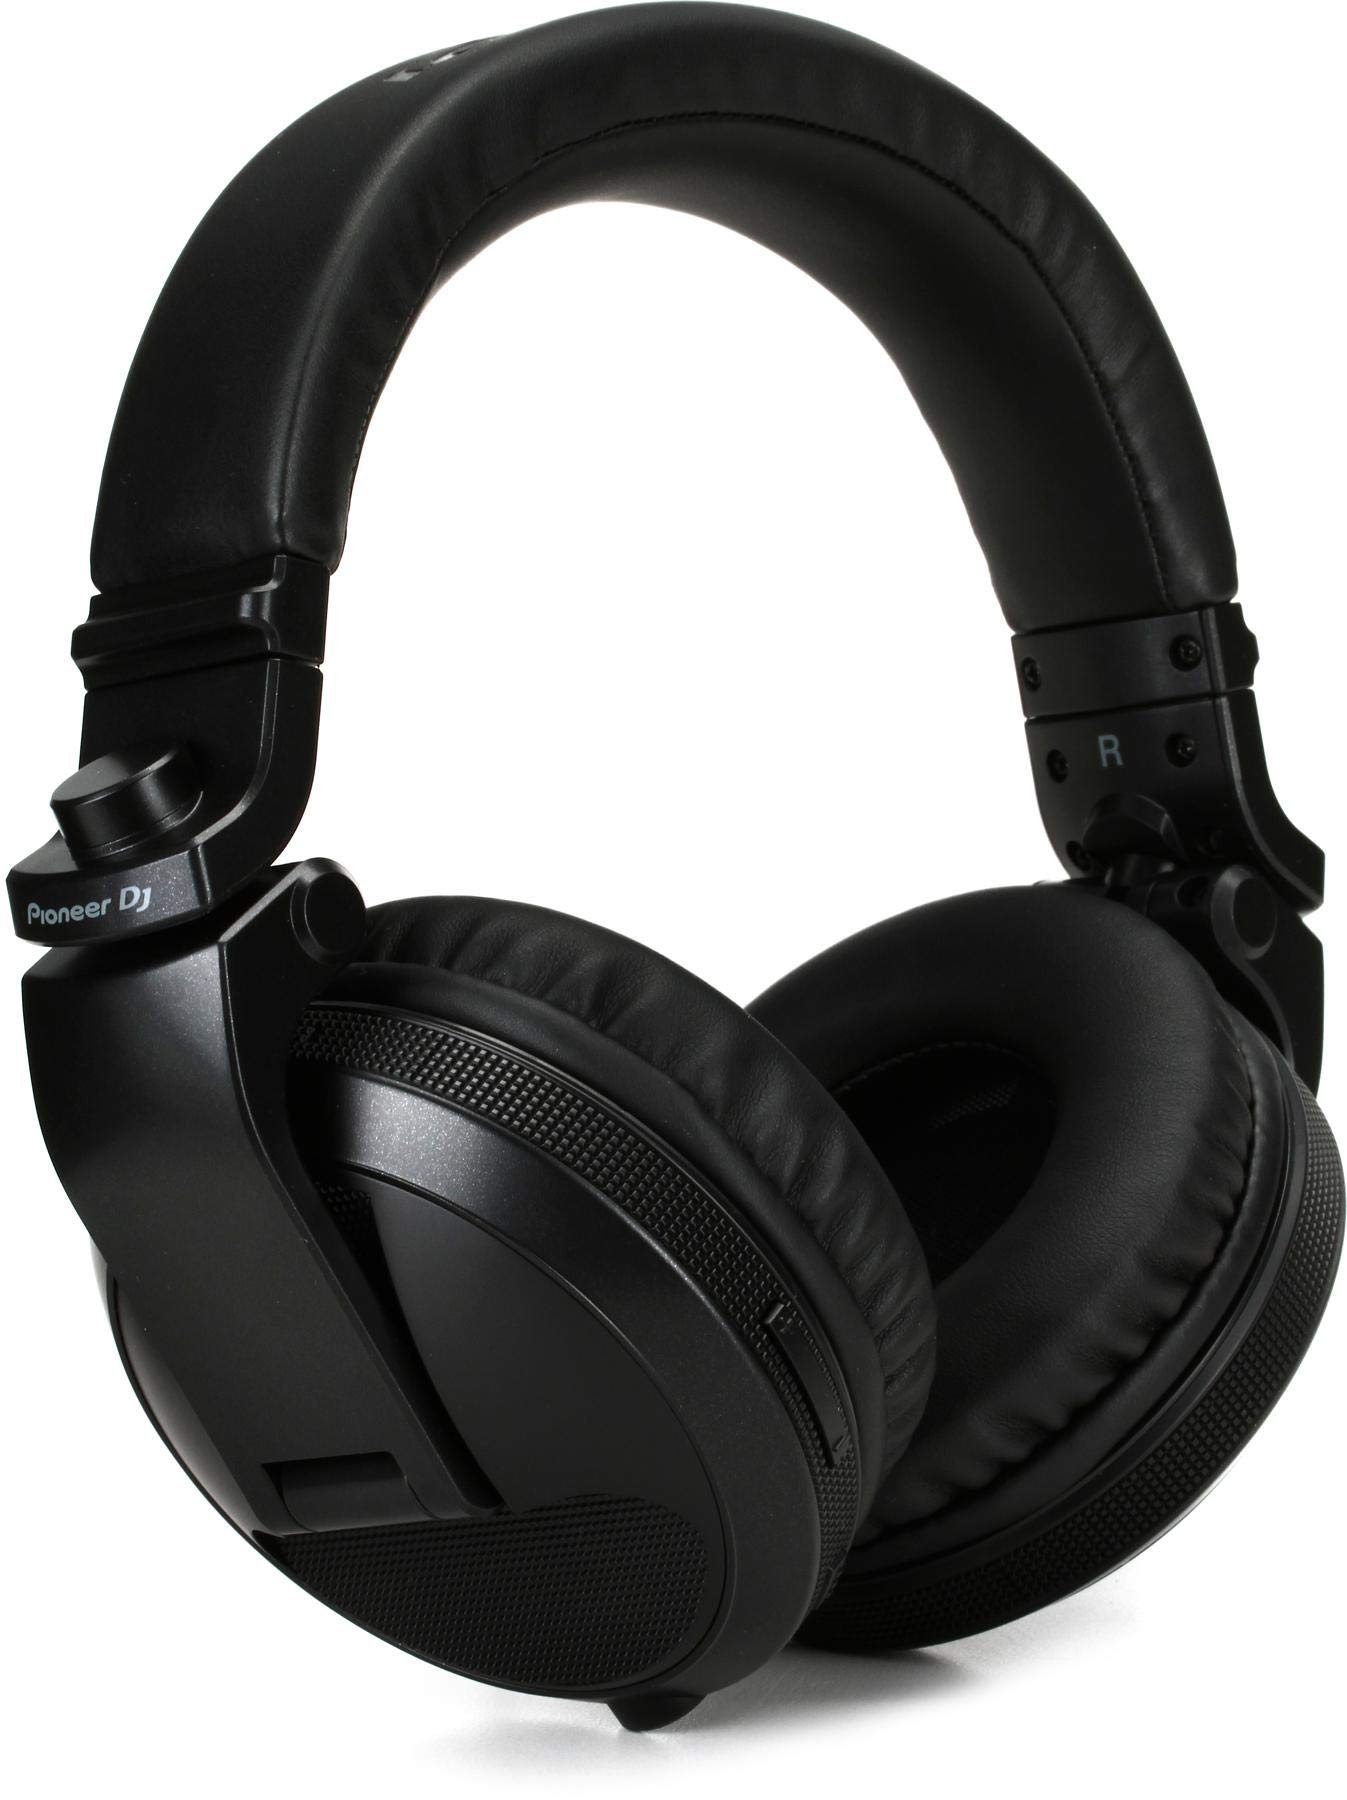 Pioneer DJ HDJ-X5BT Professional Bluetooth DJ Headphone...